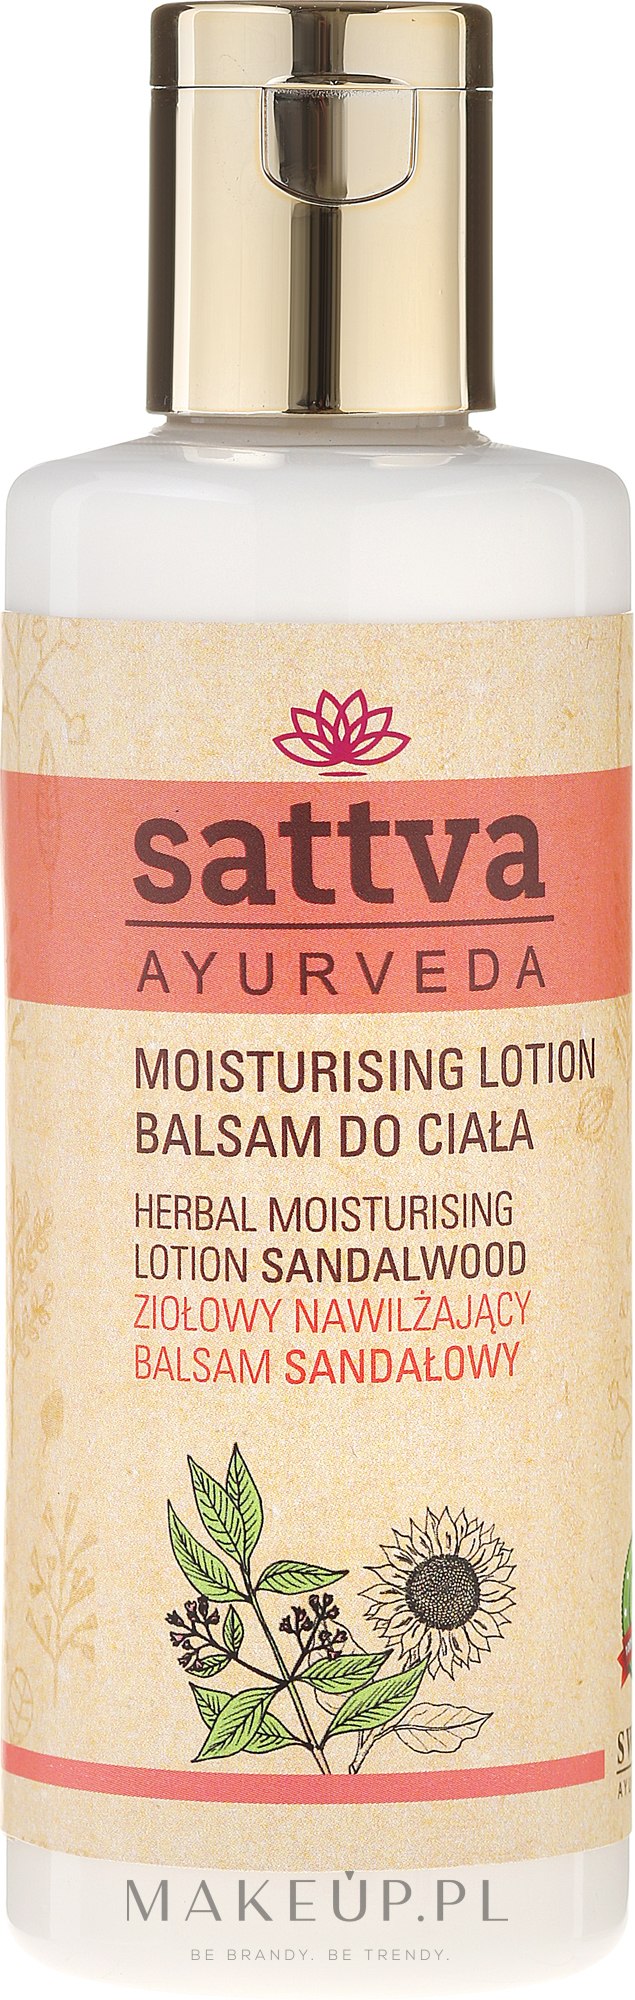 Ziołowy nawilżający balsam do ciała Drzewo sandałowe - Sattva Ayurveda Herbal Moisturising Lotion Sandalwood — Zdjęcie 210 ml